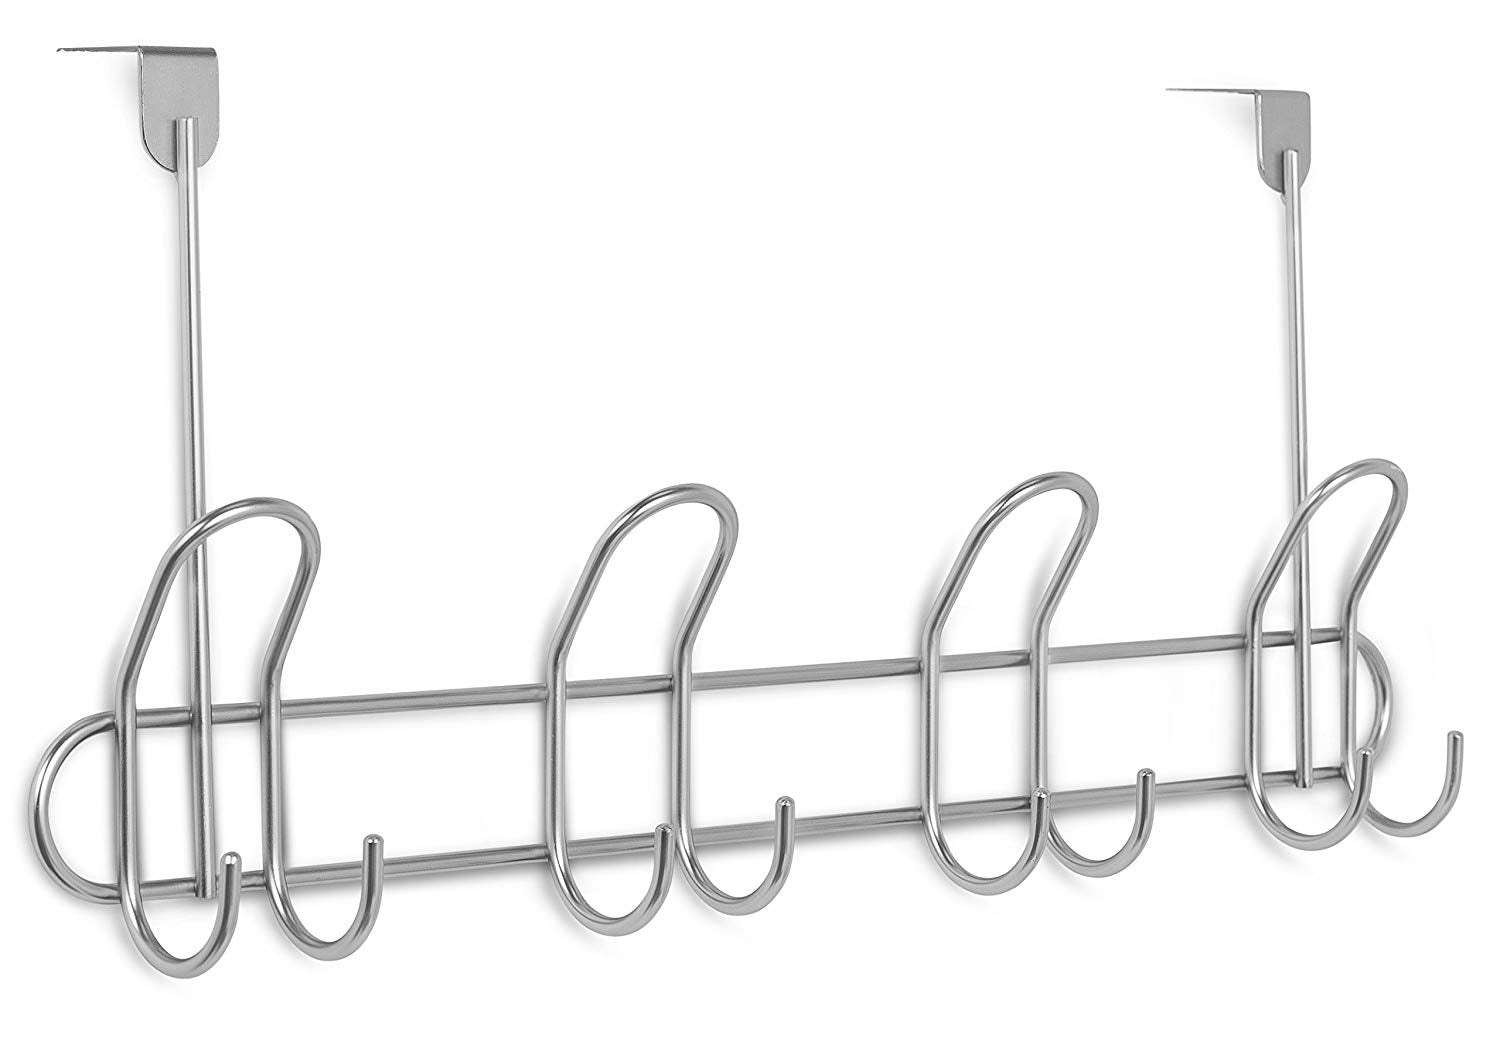 Internet's Best Over the Door Double Wire Hook Rack | 4 Hooks | Stainless Steel Coat and Hat Rack Hanger | Bathroom Towel Rail | Outdoor or Indoor